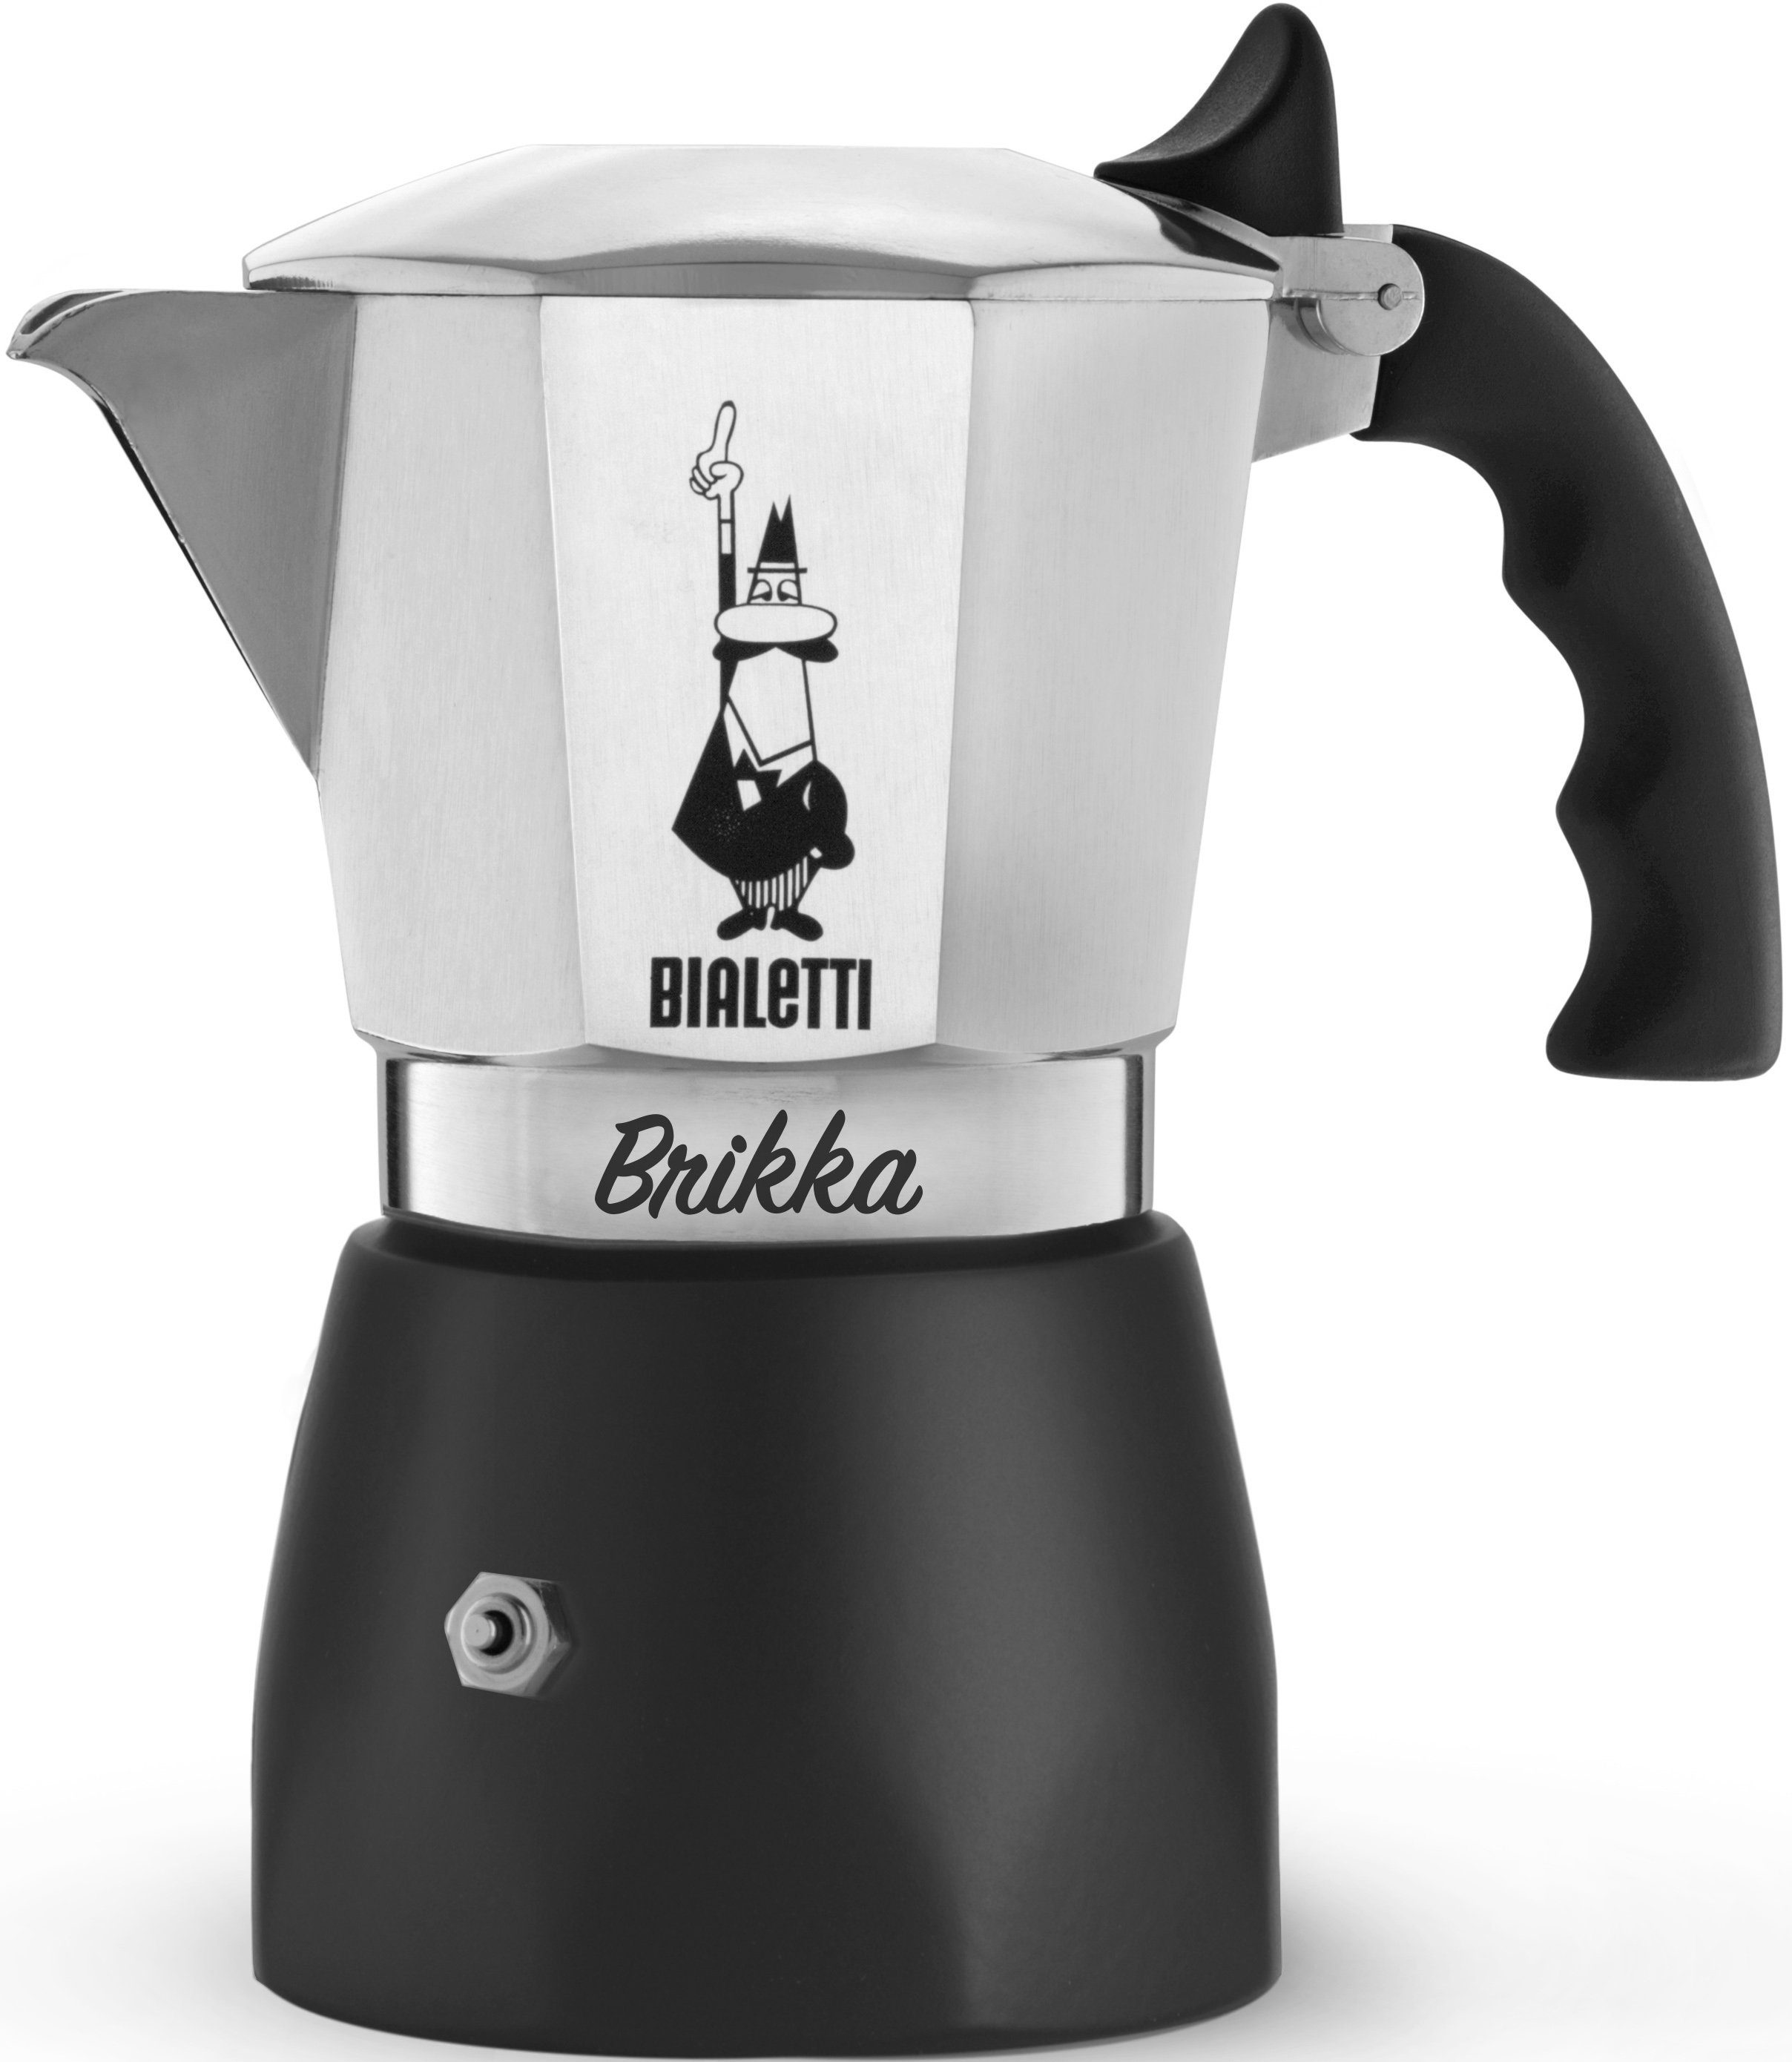 BIALETTI Espressokocher New Brikka 2 Tassen, 0,09l Kaffeekanne, aus  Aluminium, für zwei Tassen, Kaffeemaschine, Kaffeekocher, für Gas-,  Elektro- und Propan-Campingkocher geeignet, für Camping, Silber / Schwarz